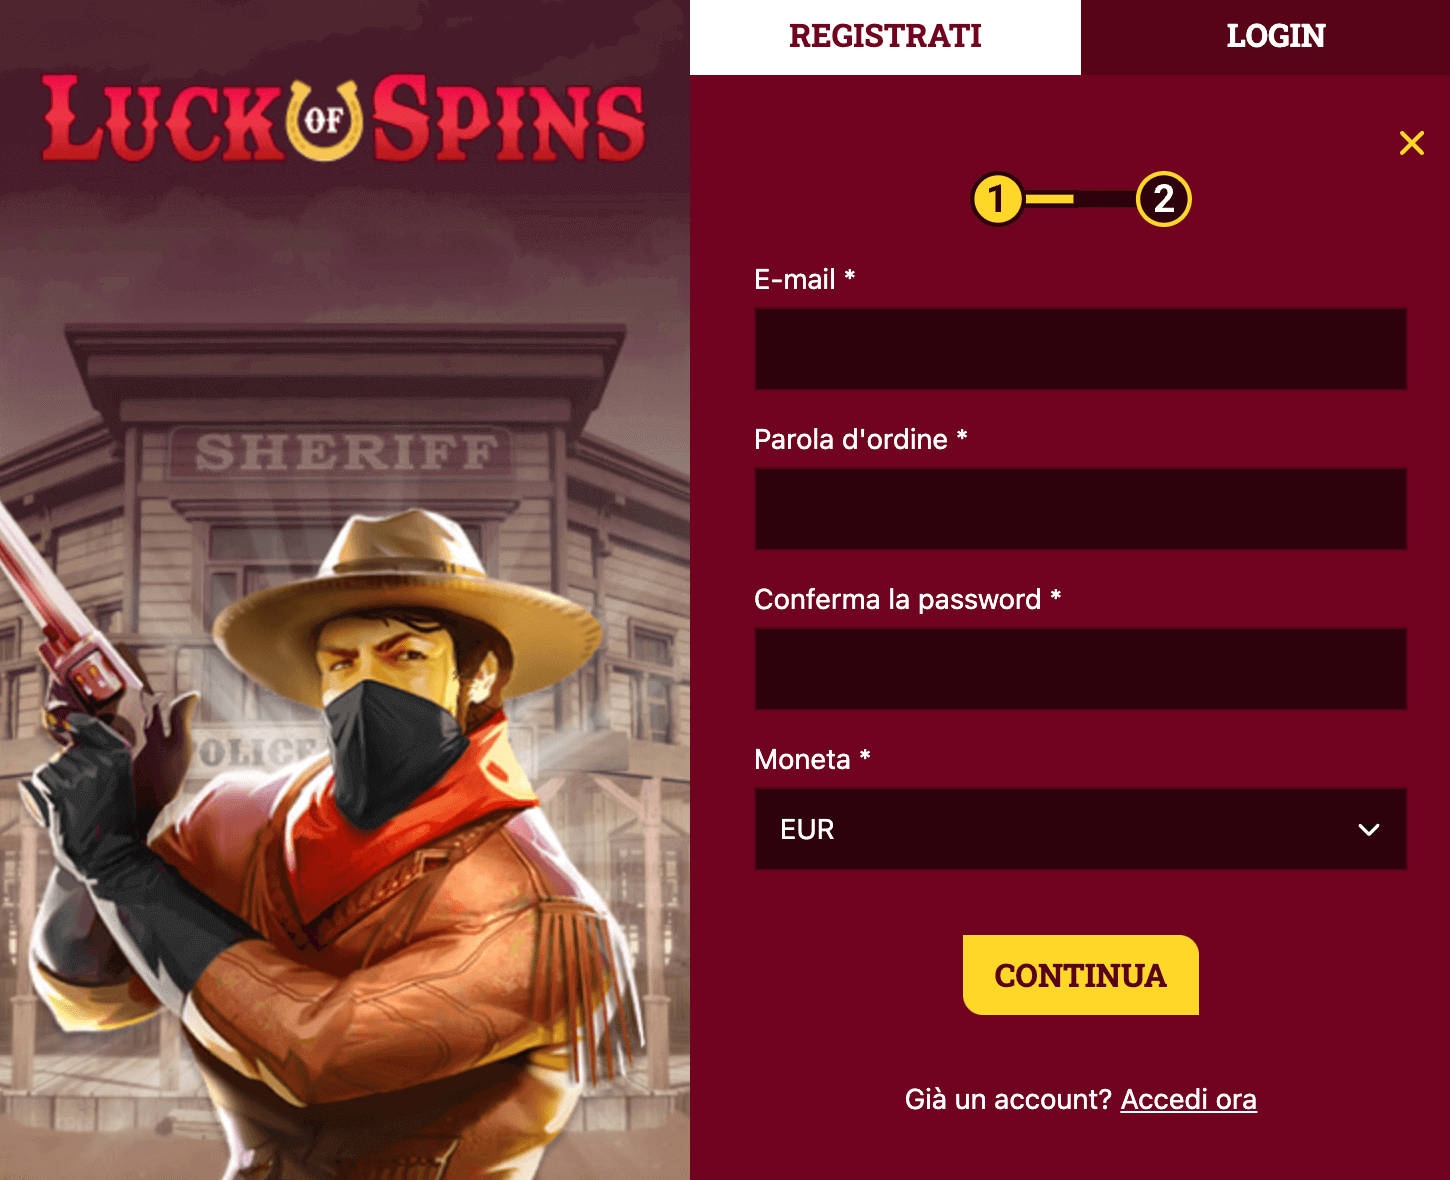 Luck of spins Casino Registrazione